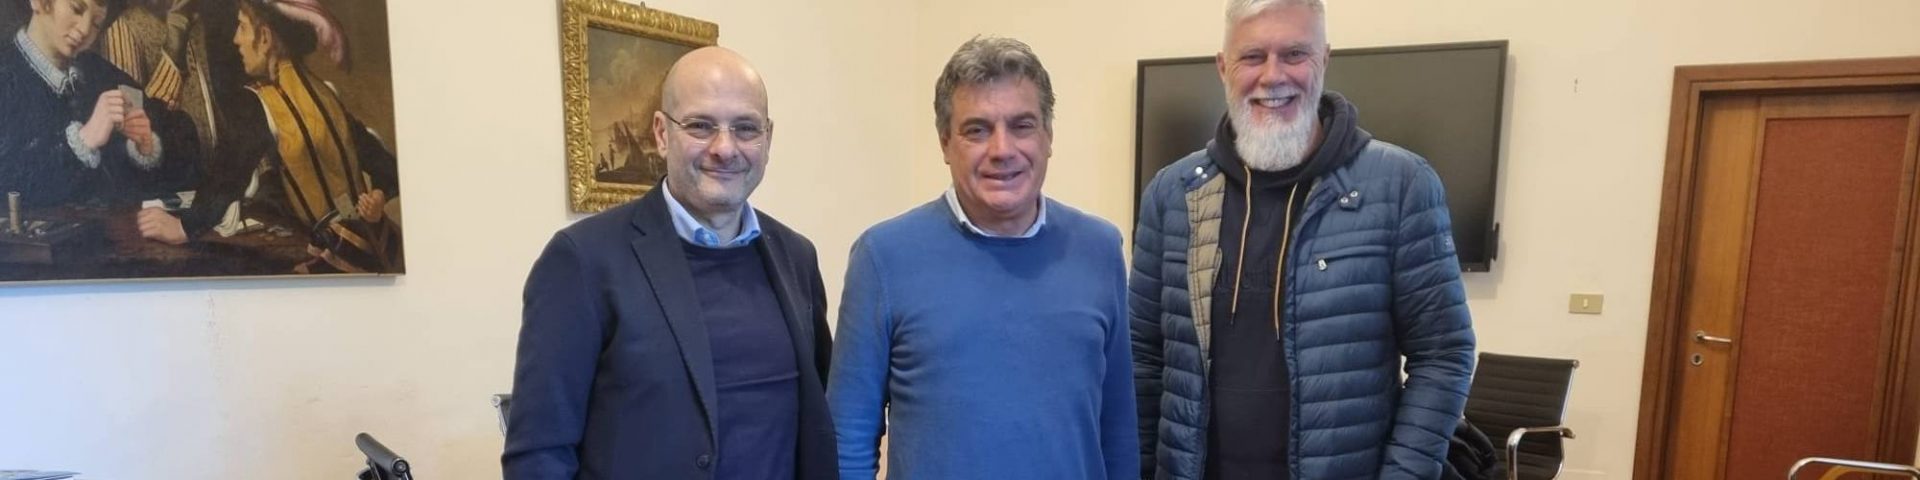 Confesercenti incontra il sindaco del Comune di Fano Massimo Seri